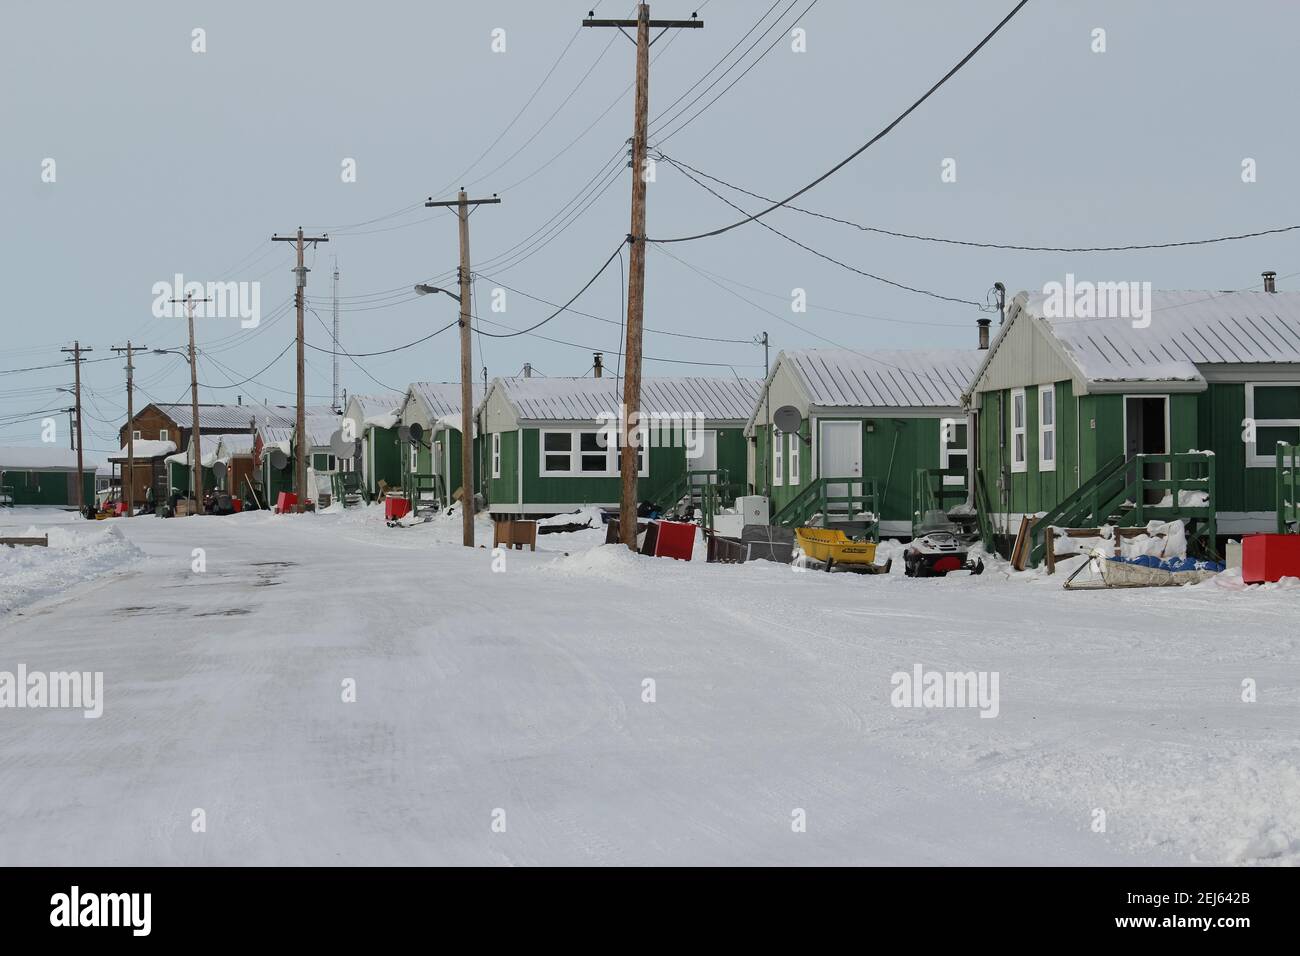 Logement dans le hameau inuvialuit de Tuktoyaktuk en hiver, dans les Territoires du Nord-Ouest, dans l'ouest de l'Arctique canadien. Banque D'Images